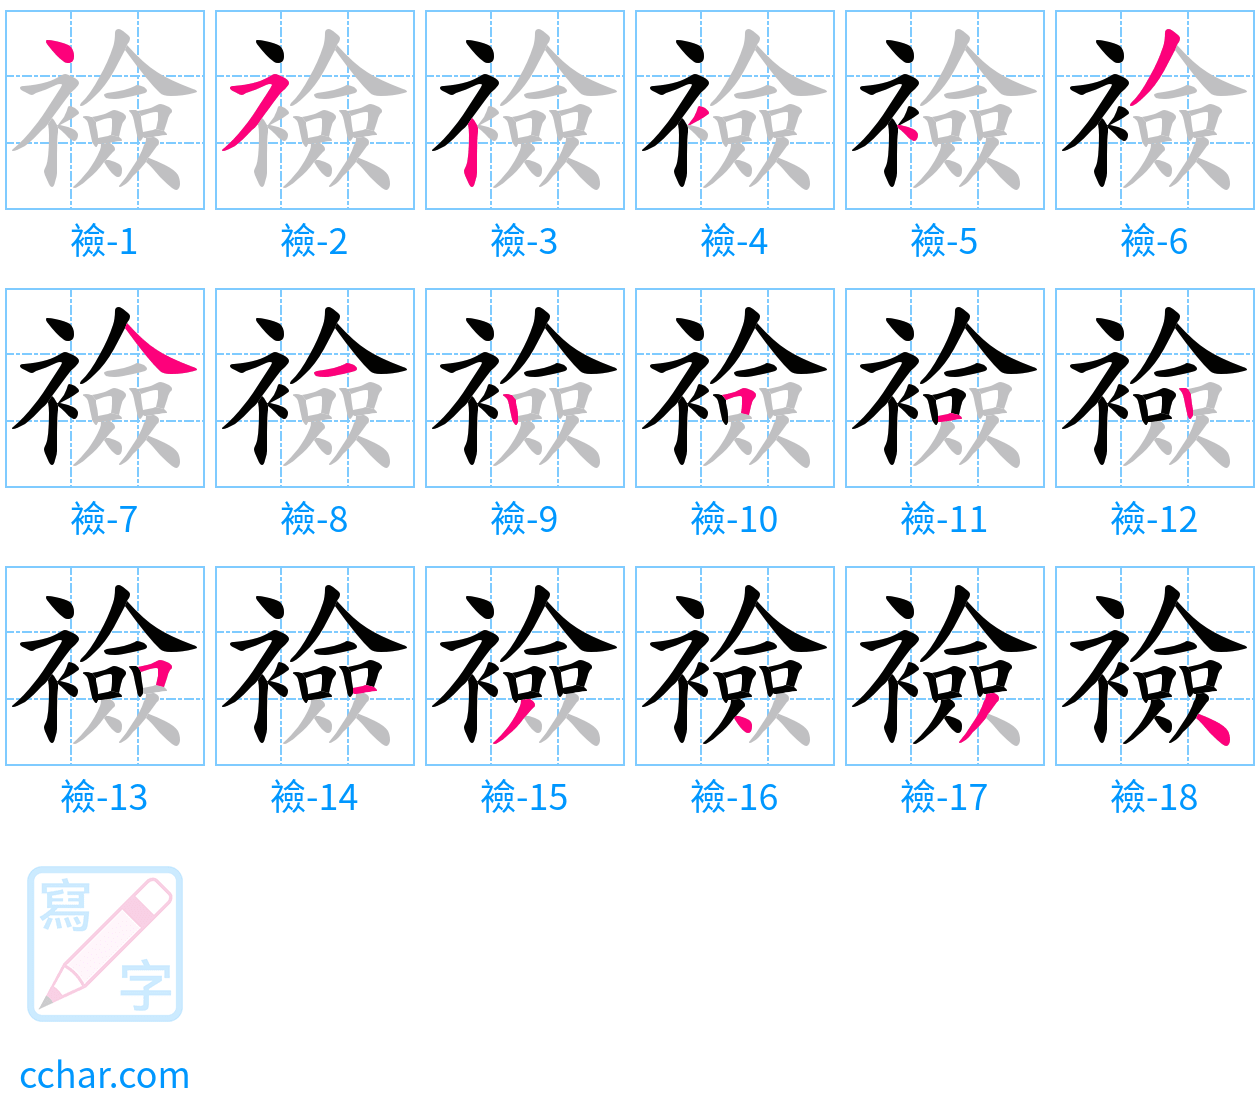 襝 stroke order step-by-step diagram